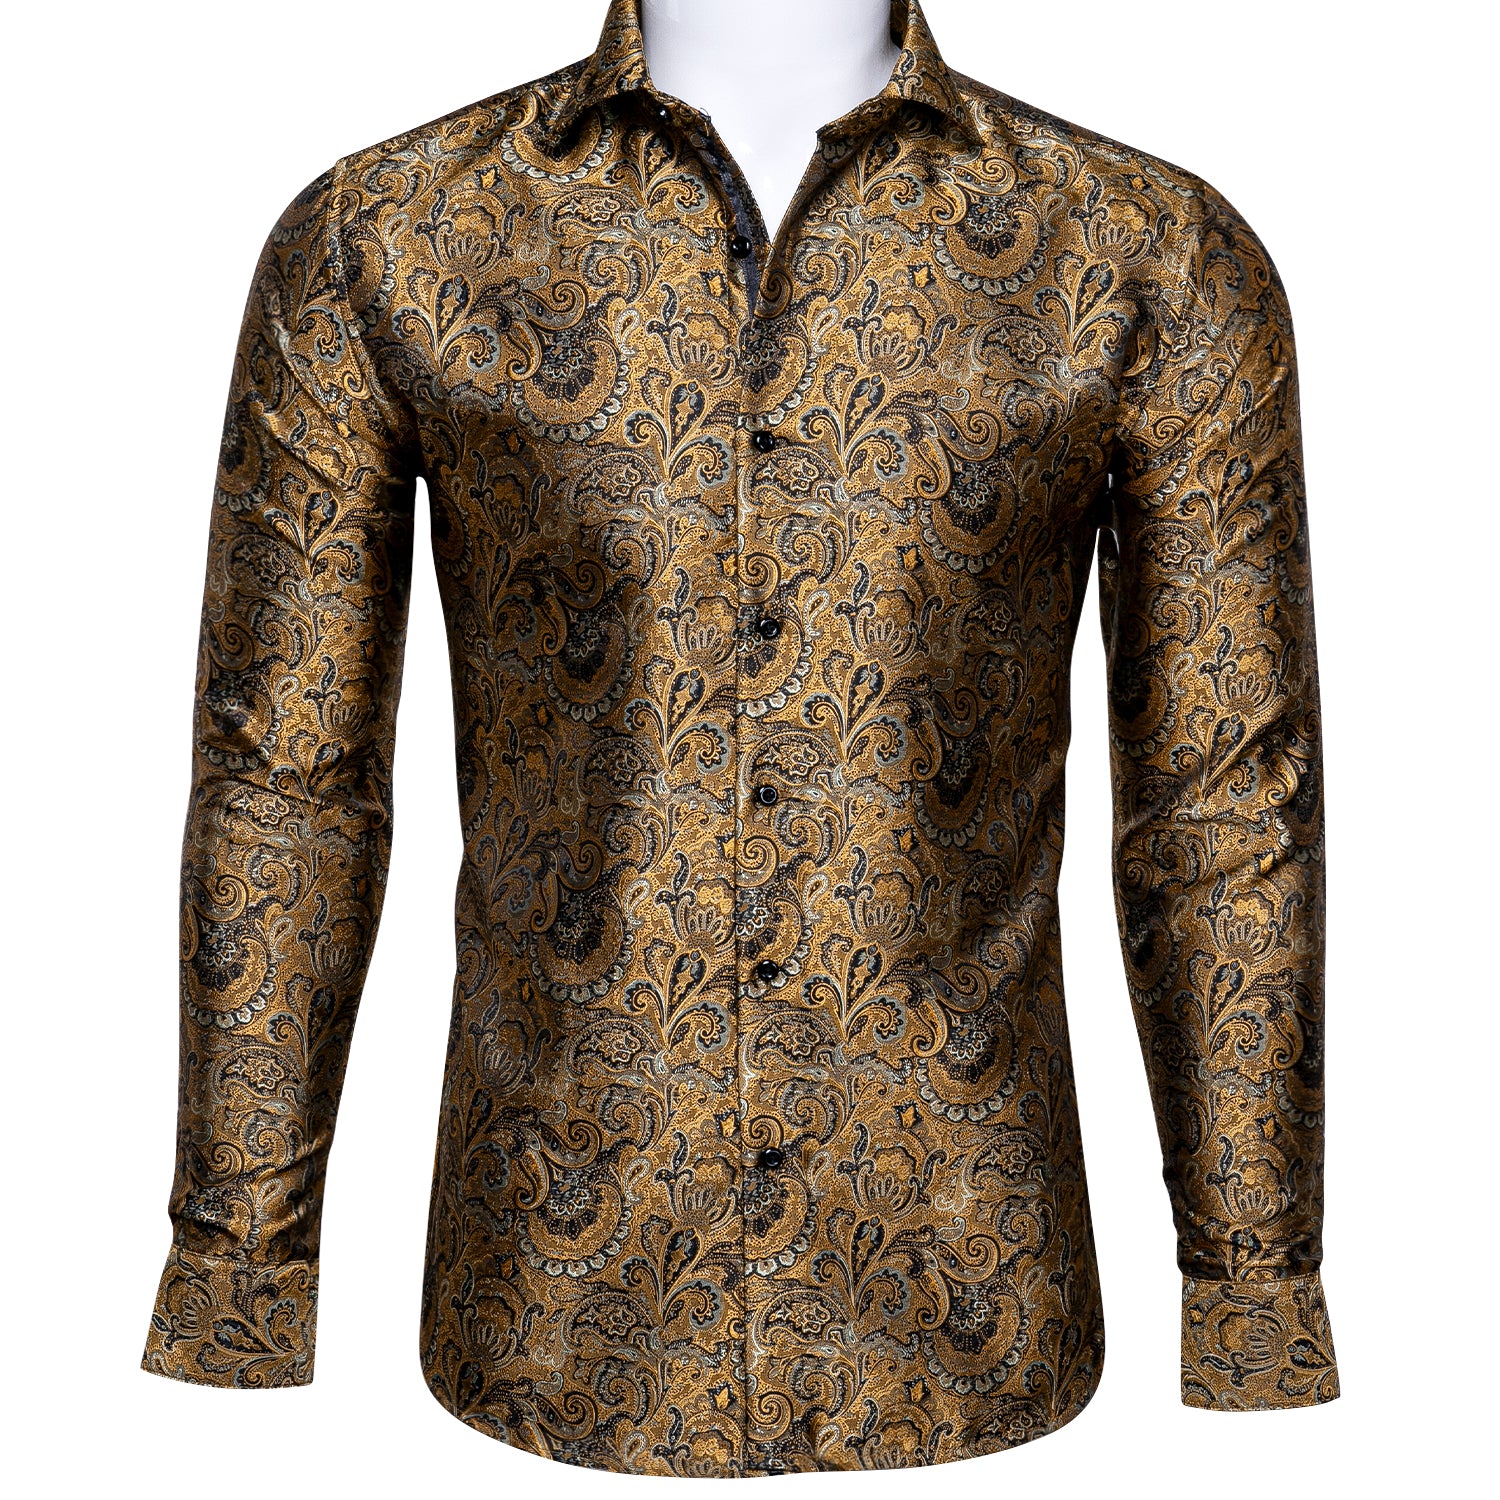 Barry.wang Button Down Shirt Golden Jacquard Woven Floral Silk Shirt